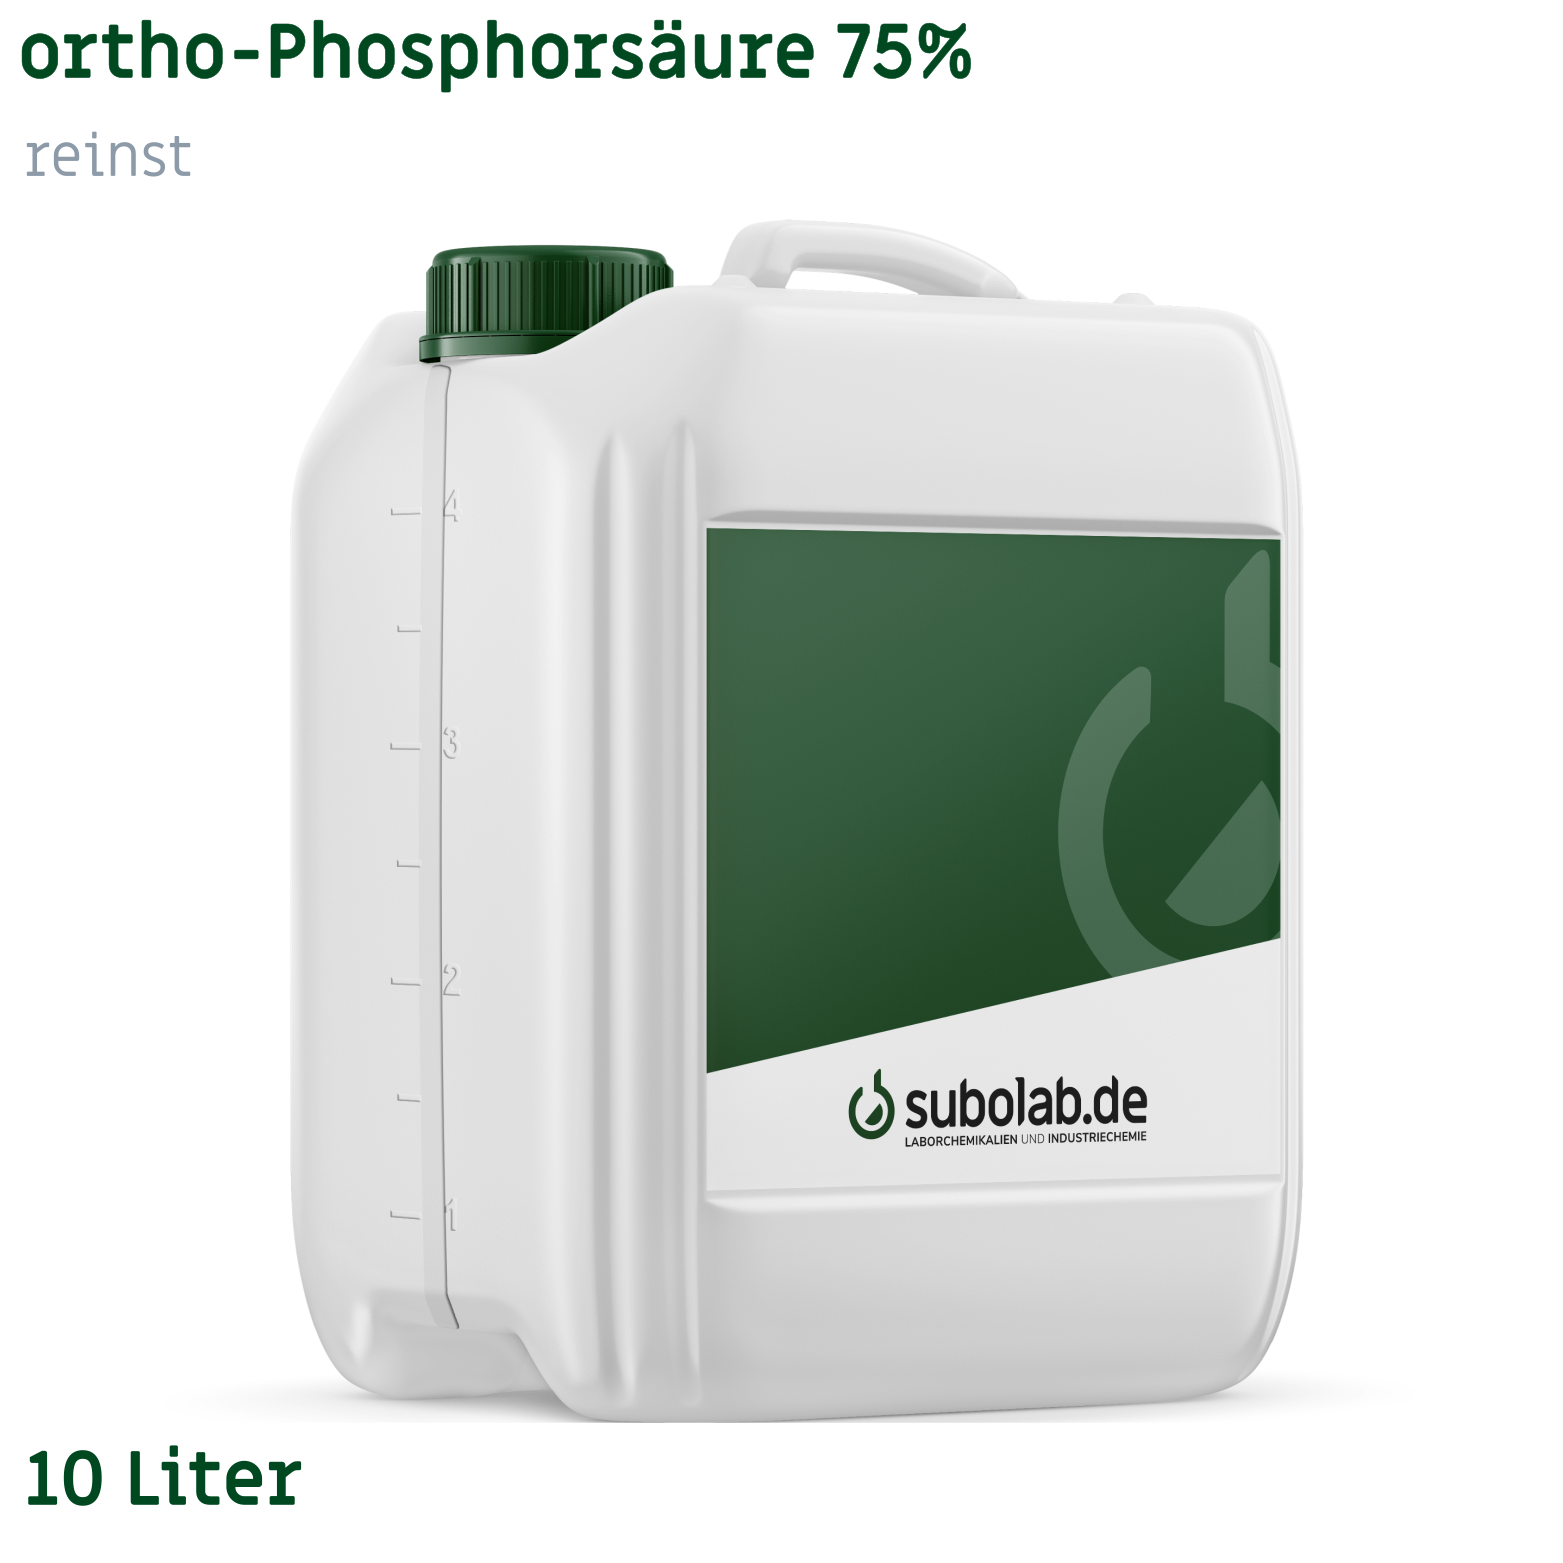 Bild von ortho-Phosphorsäure 75% reinst (10 Liter)